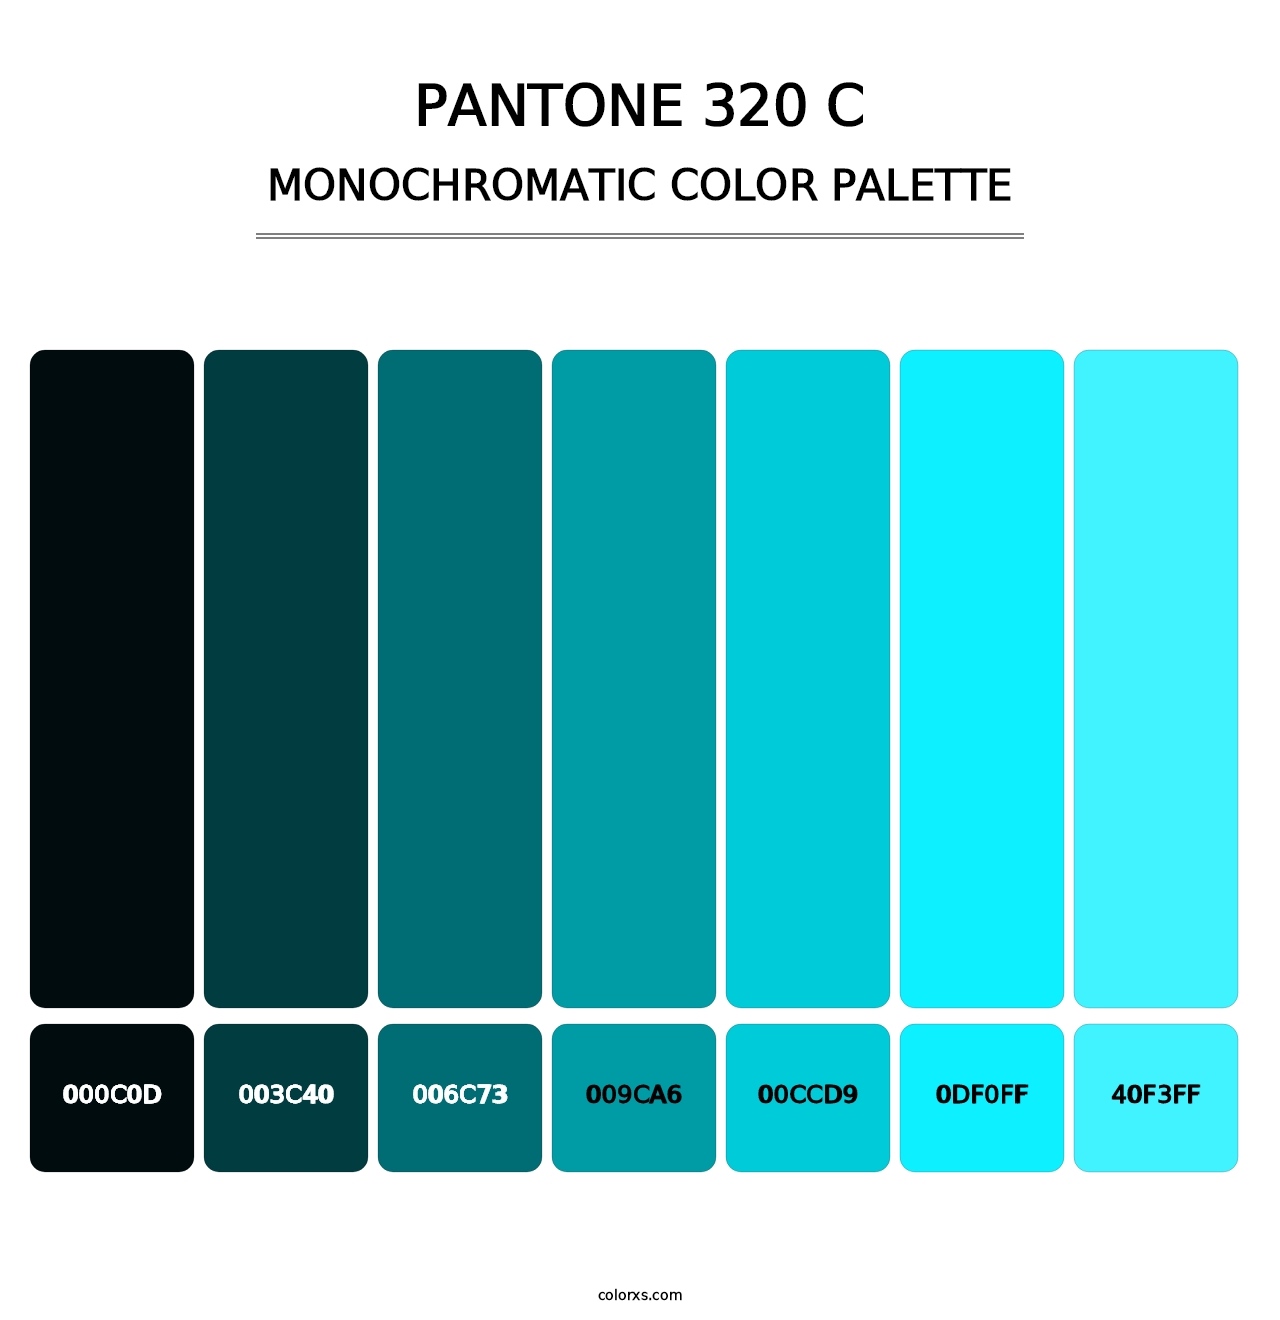 PANTONE 320 C - Monochromatic Color Palette